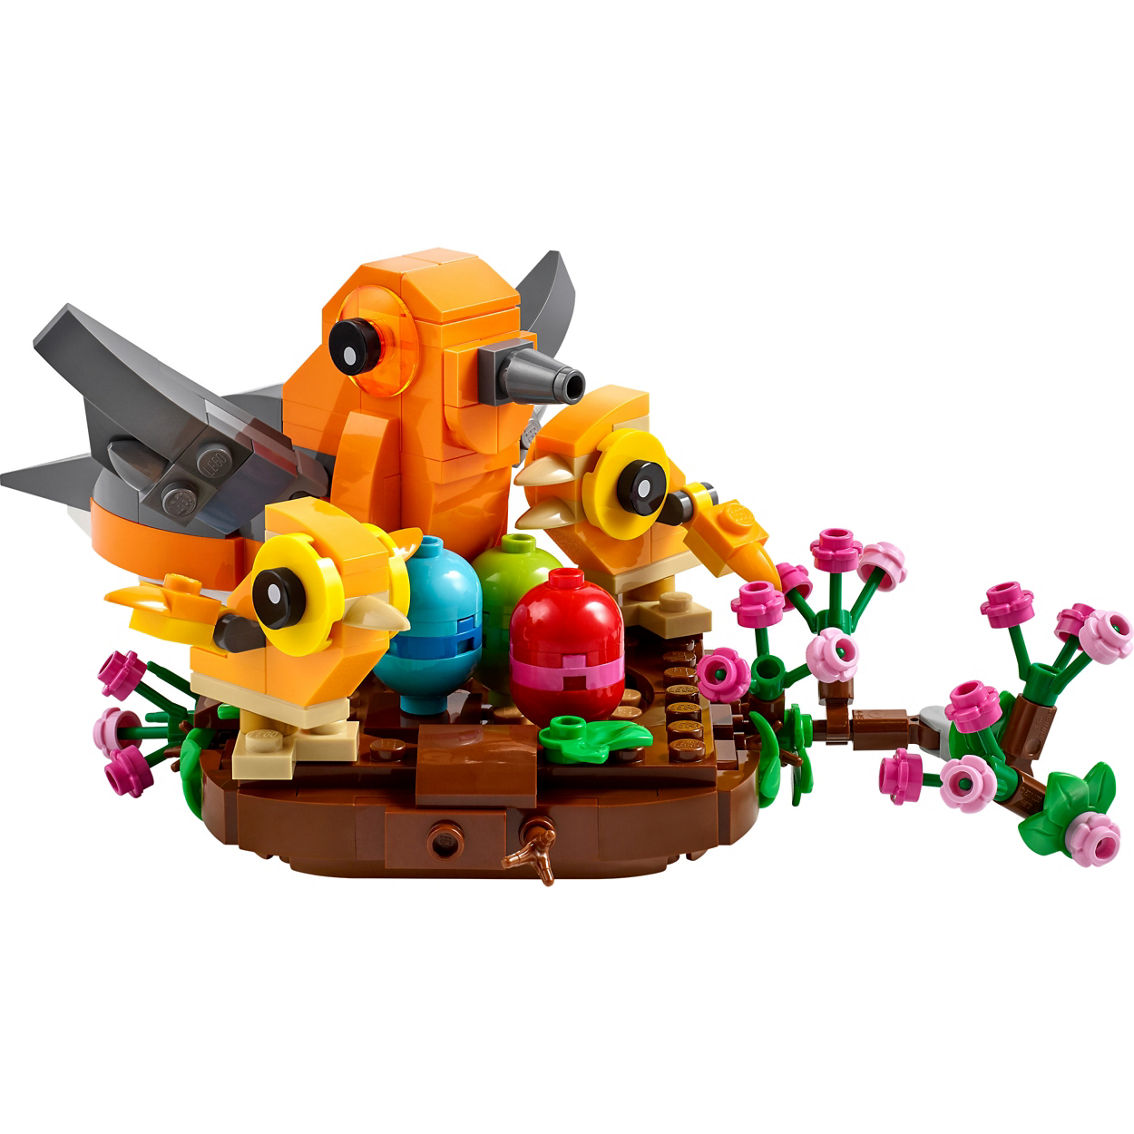 LEGO Iconic Bird's Nest 40639 - Image 3 of 4